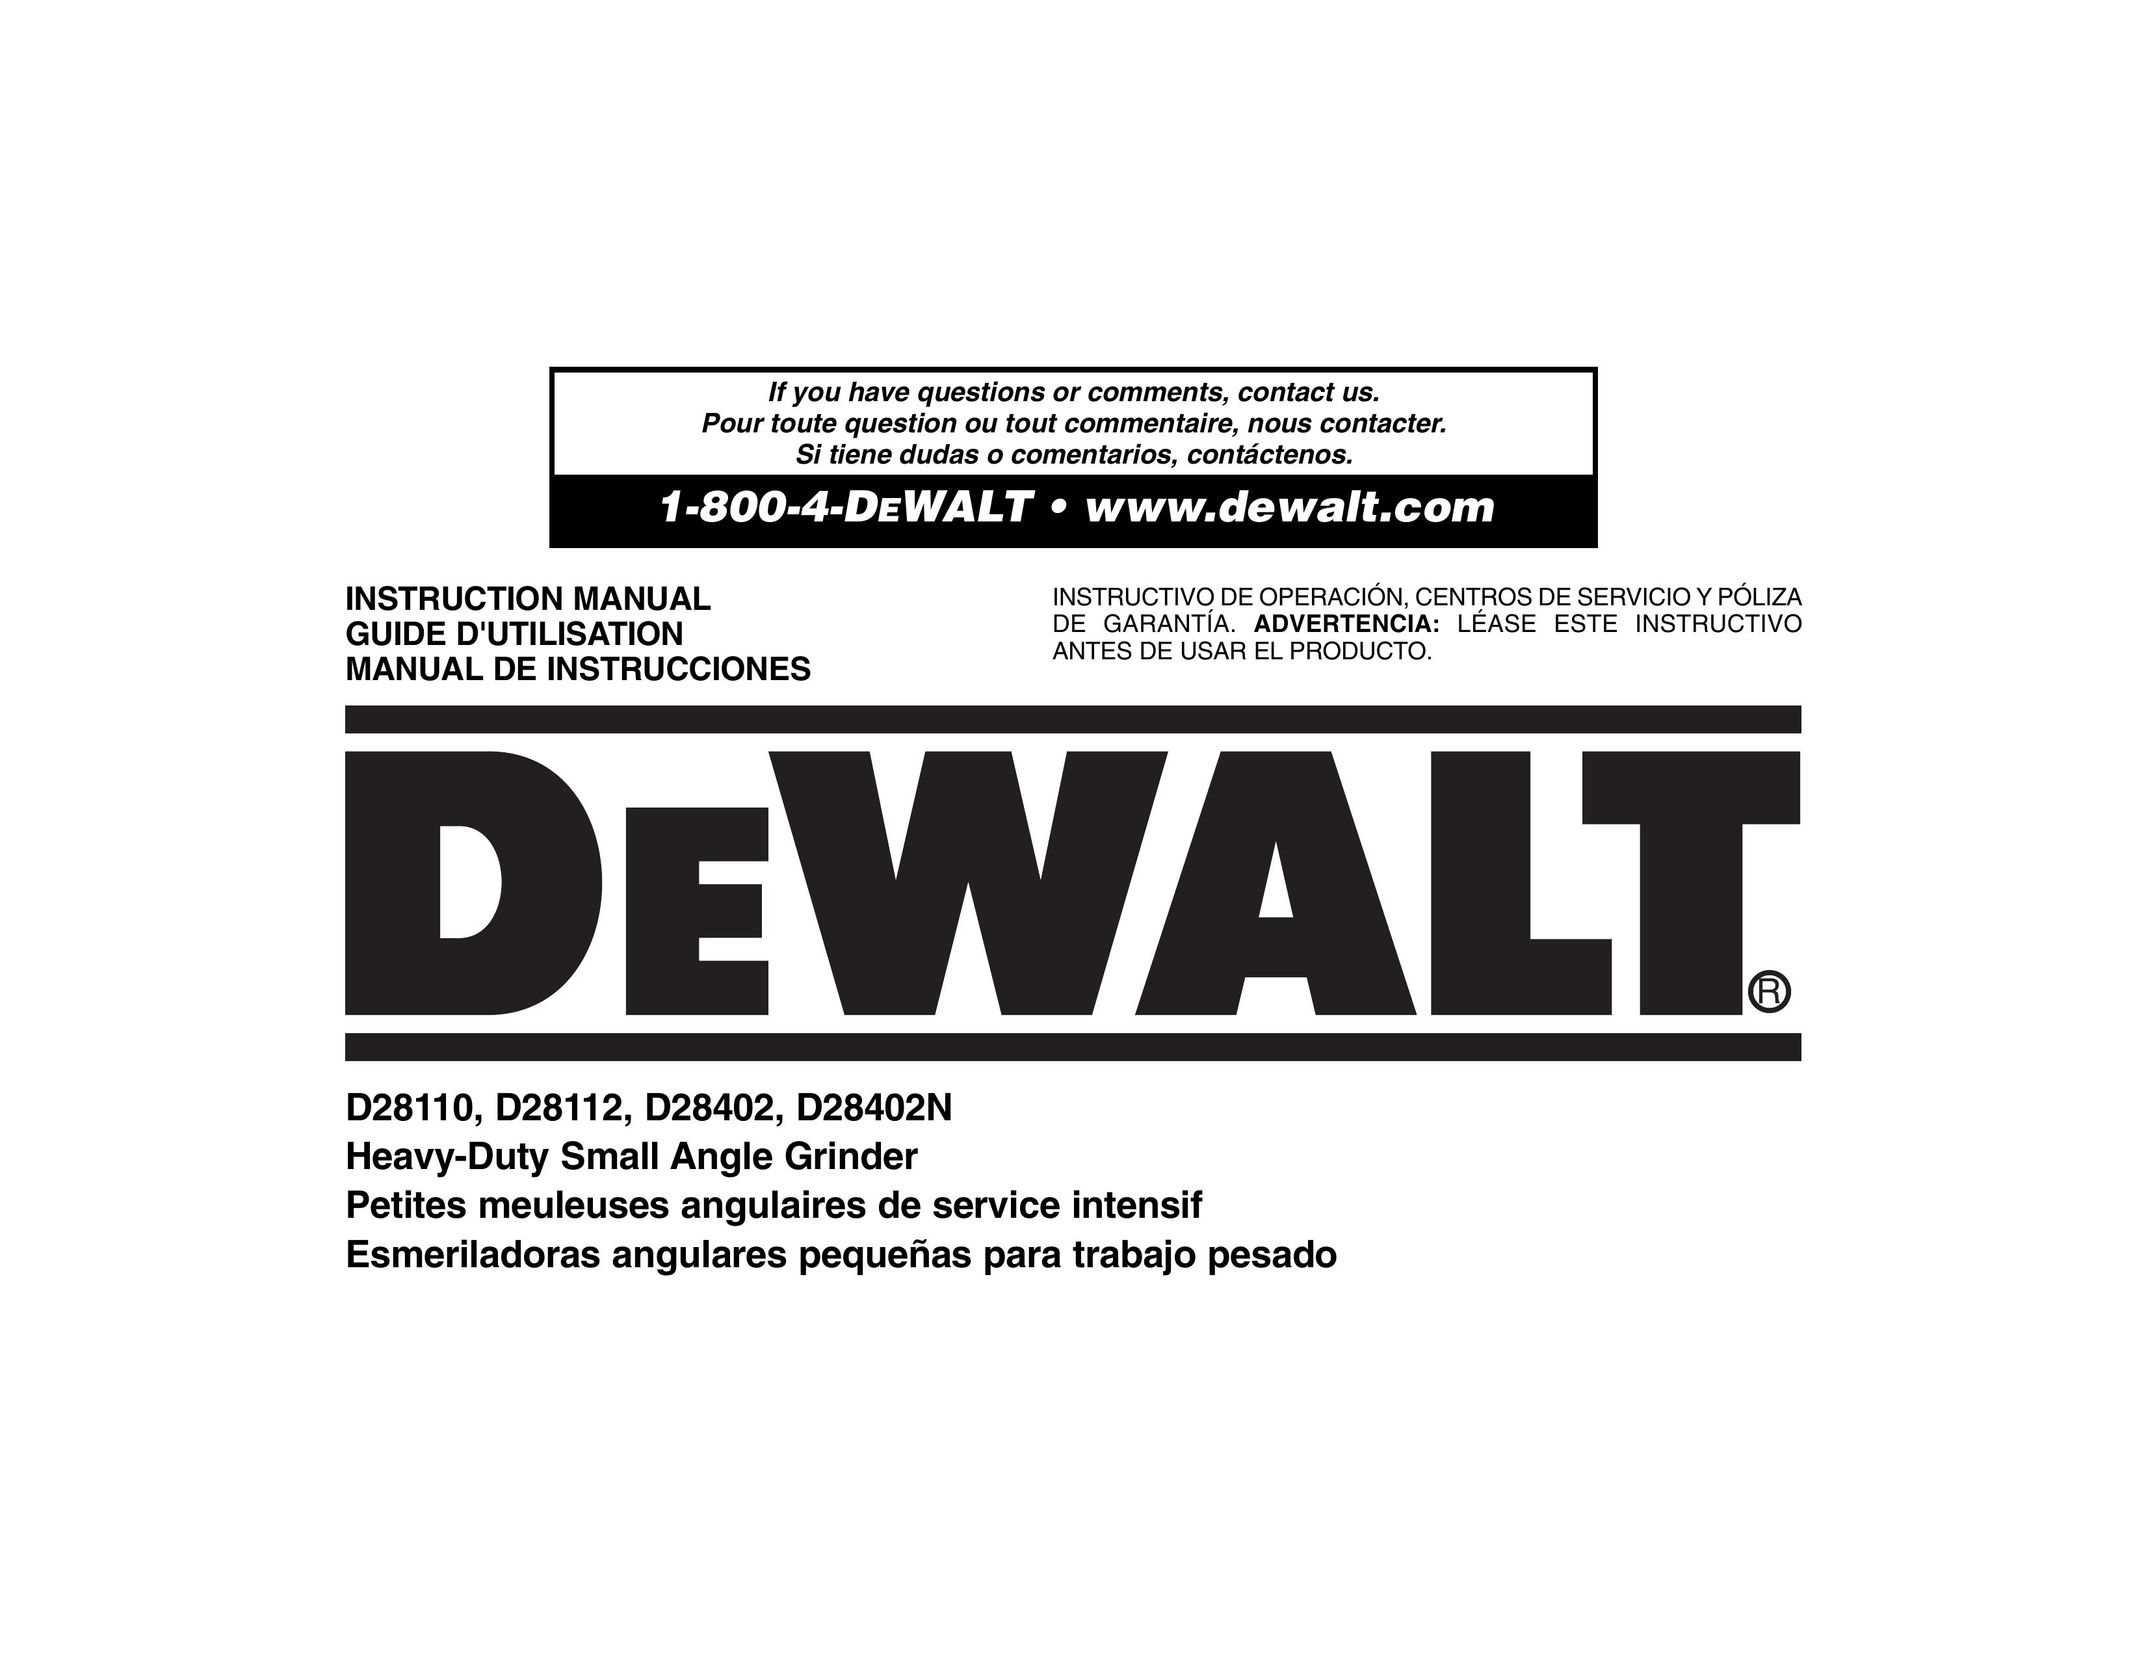 DeWalt D28112 Grinder User Manual